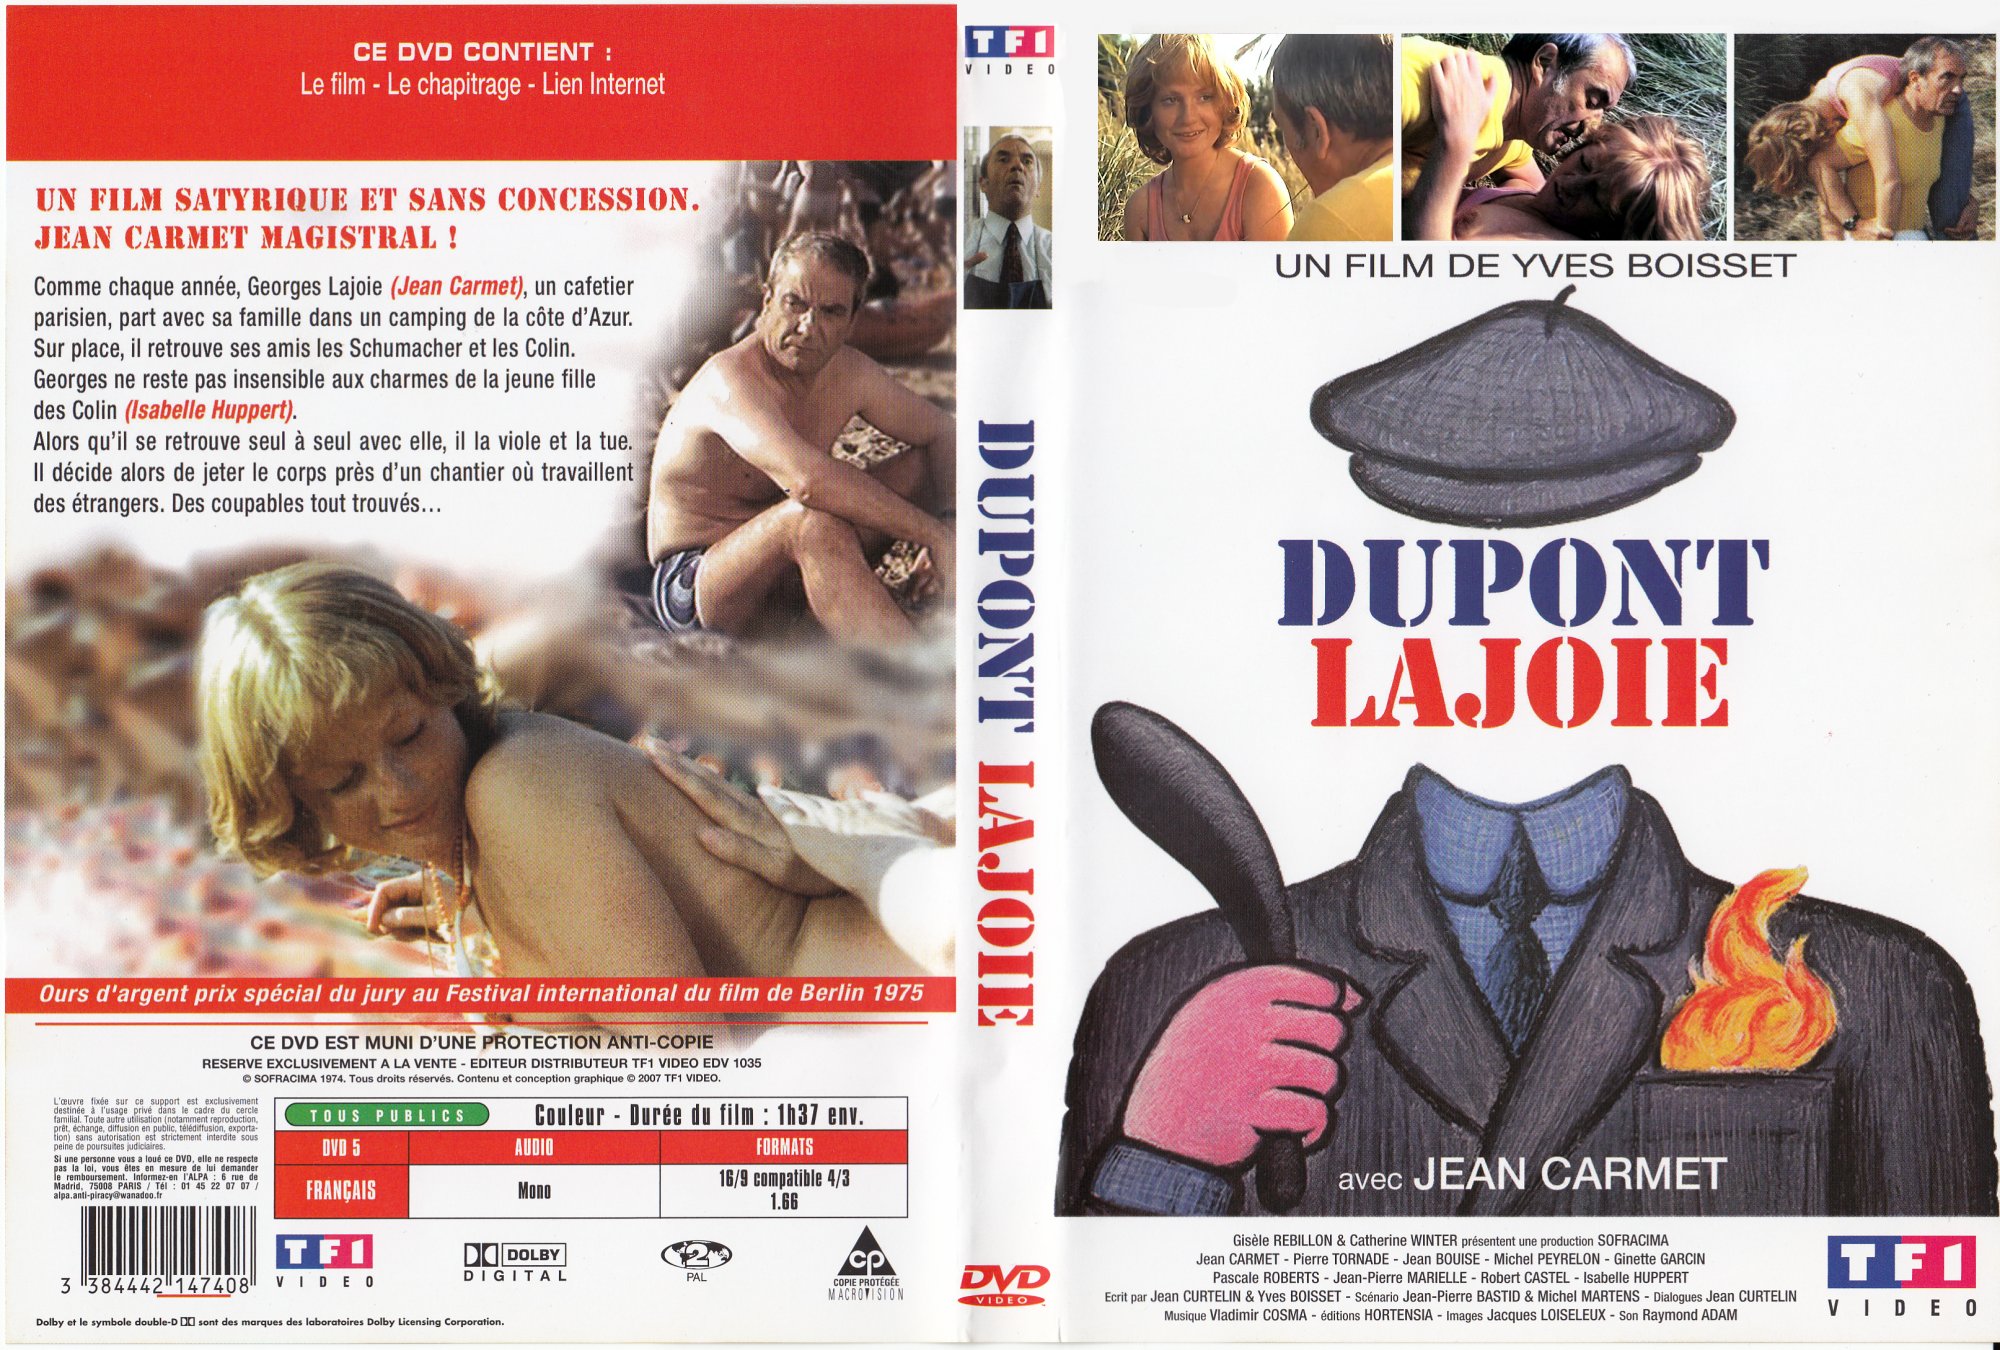 Jaquette DVD Dupont Lajoie